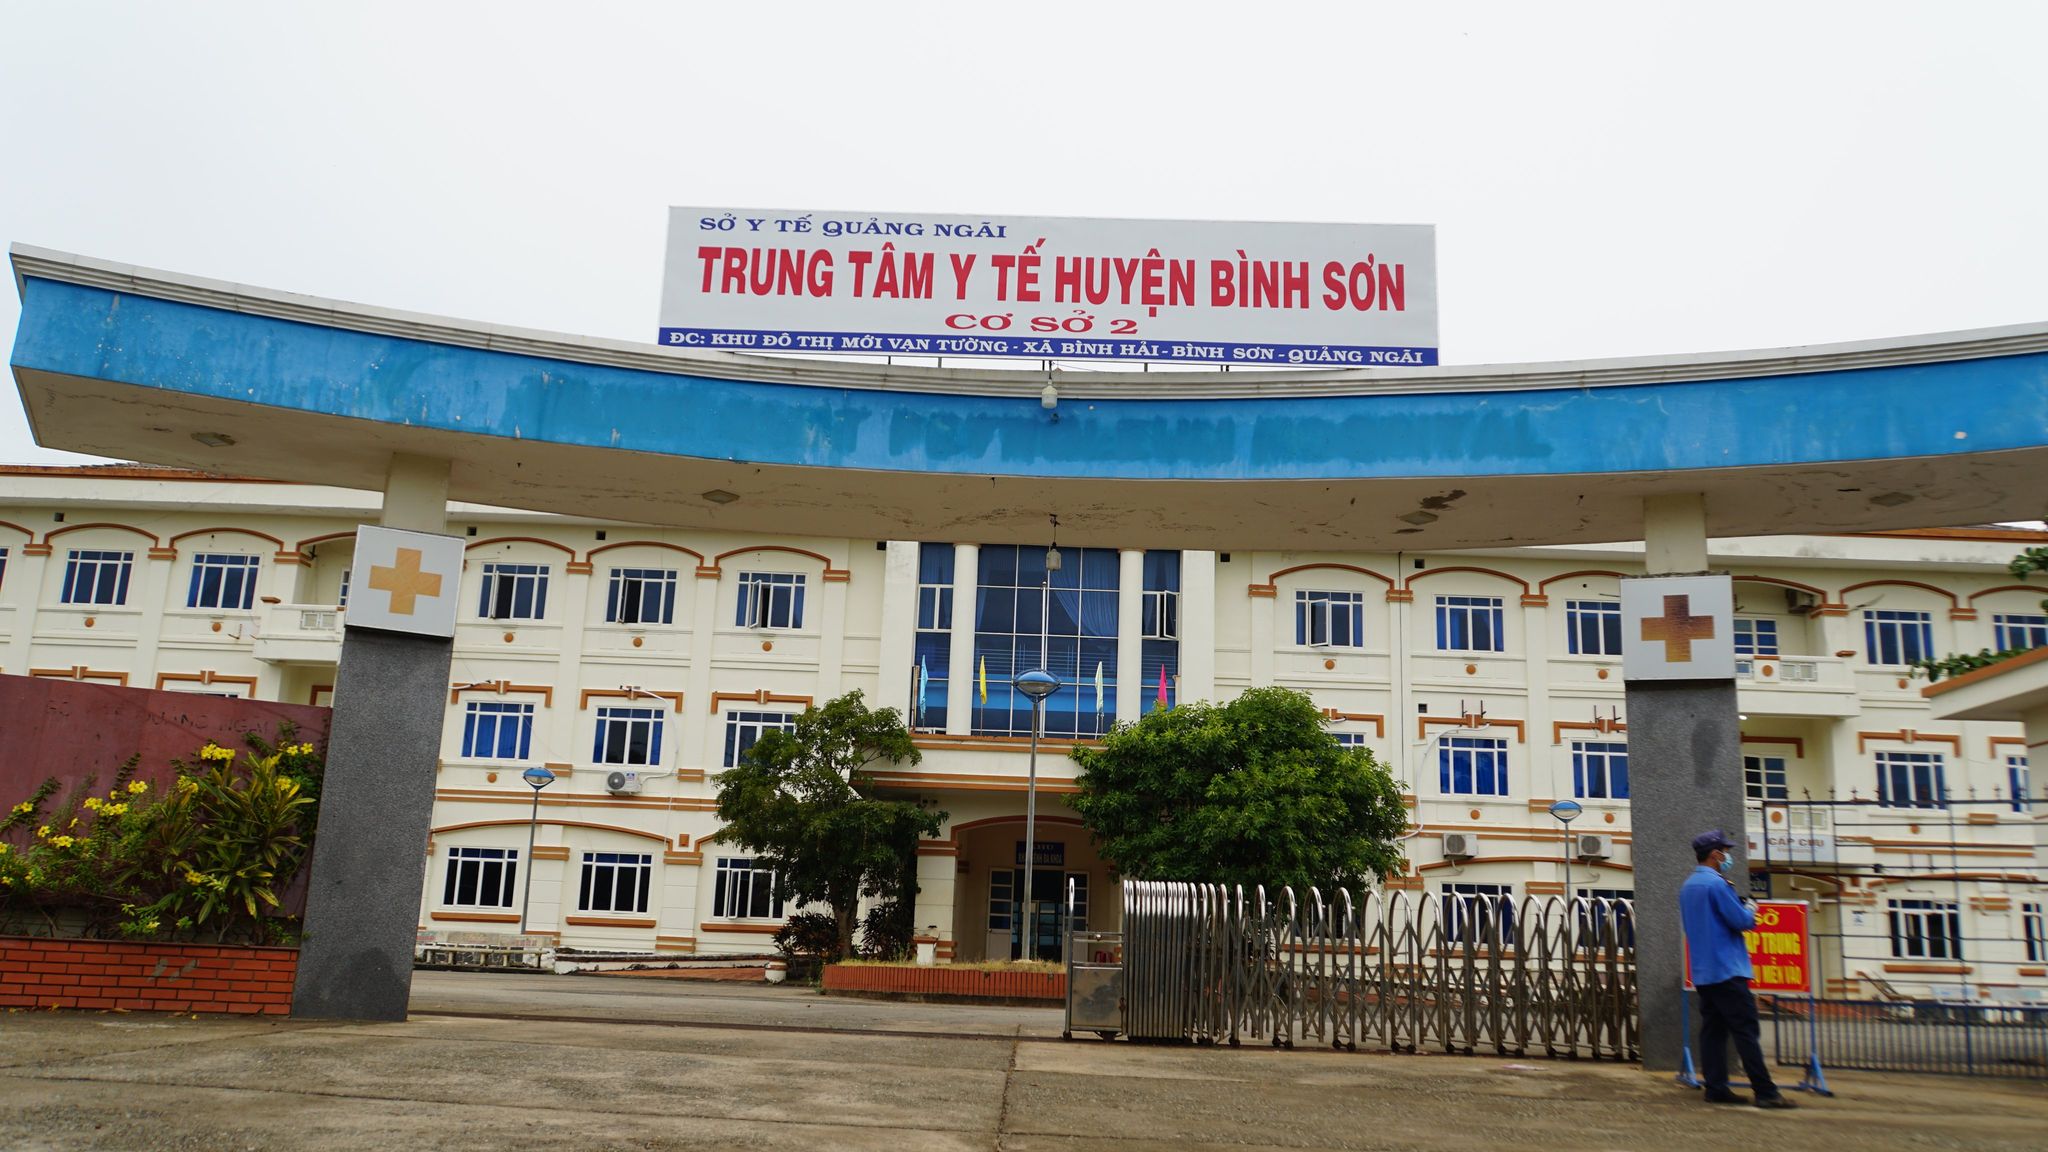 Khu cách ly tập trung tại cơ sở 2, Trung tâm Y tế huyện Bình Sơn.